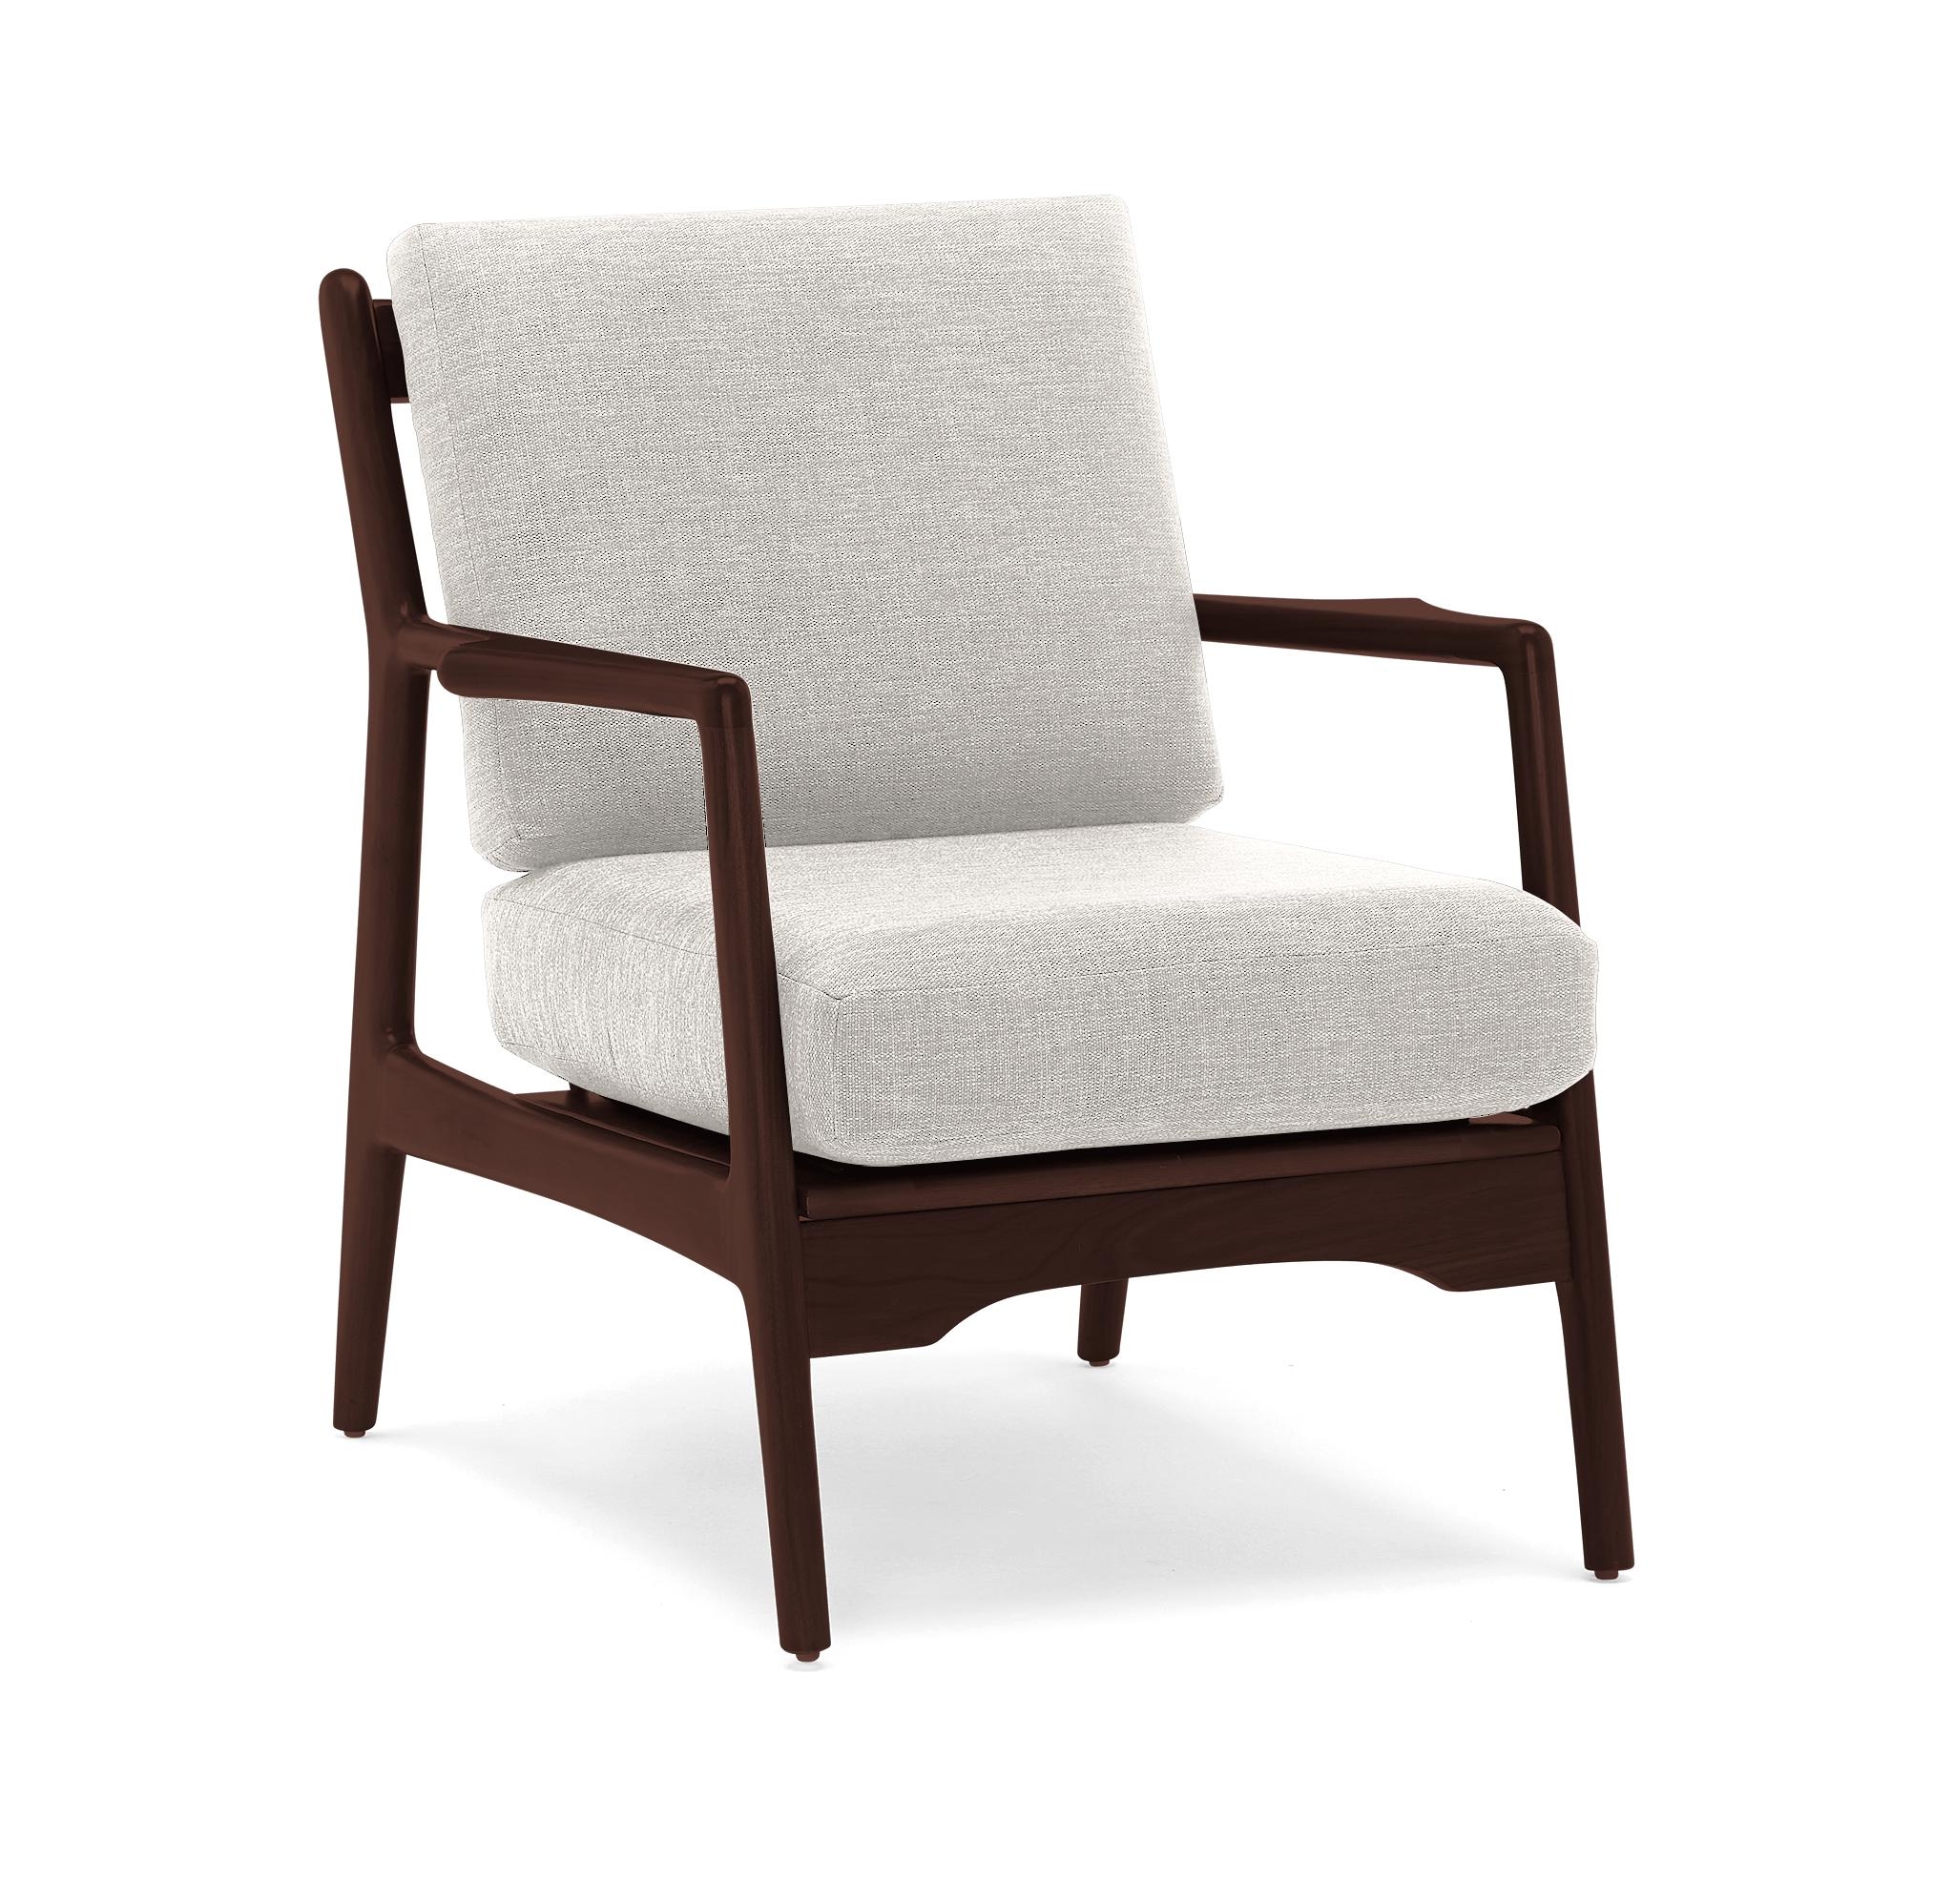 Beige/White Collins Mid Century Modern Chair - Merit Dove - Walnut - Image 2